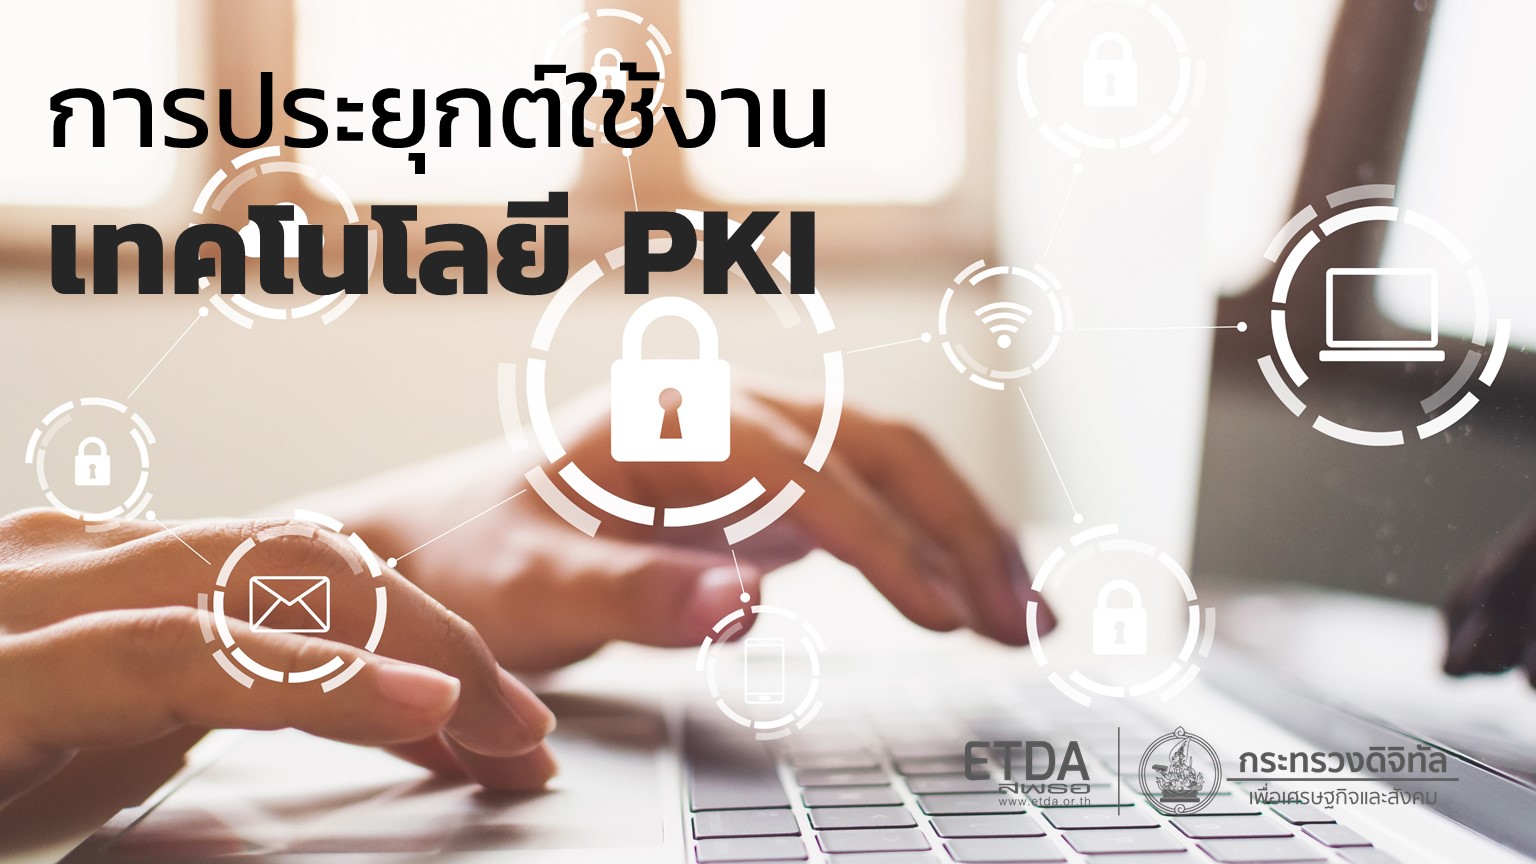 การประยุกต์ใช้งานเทคโนโลยีโครงสร้างพื้นฐานกุญแจสาธารณะ (PKI)